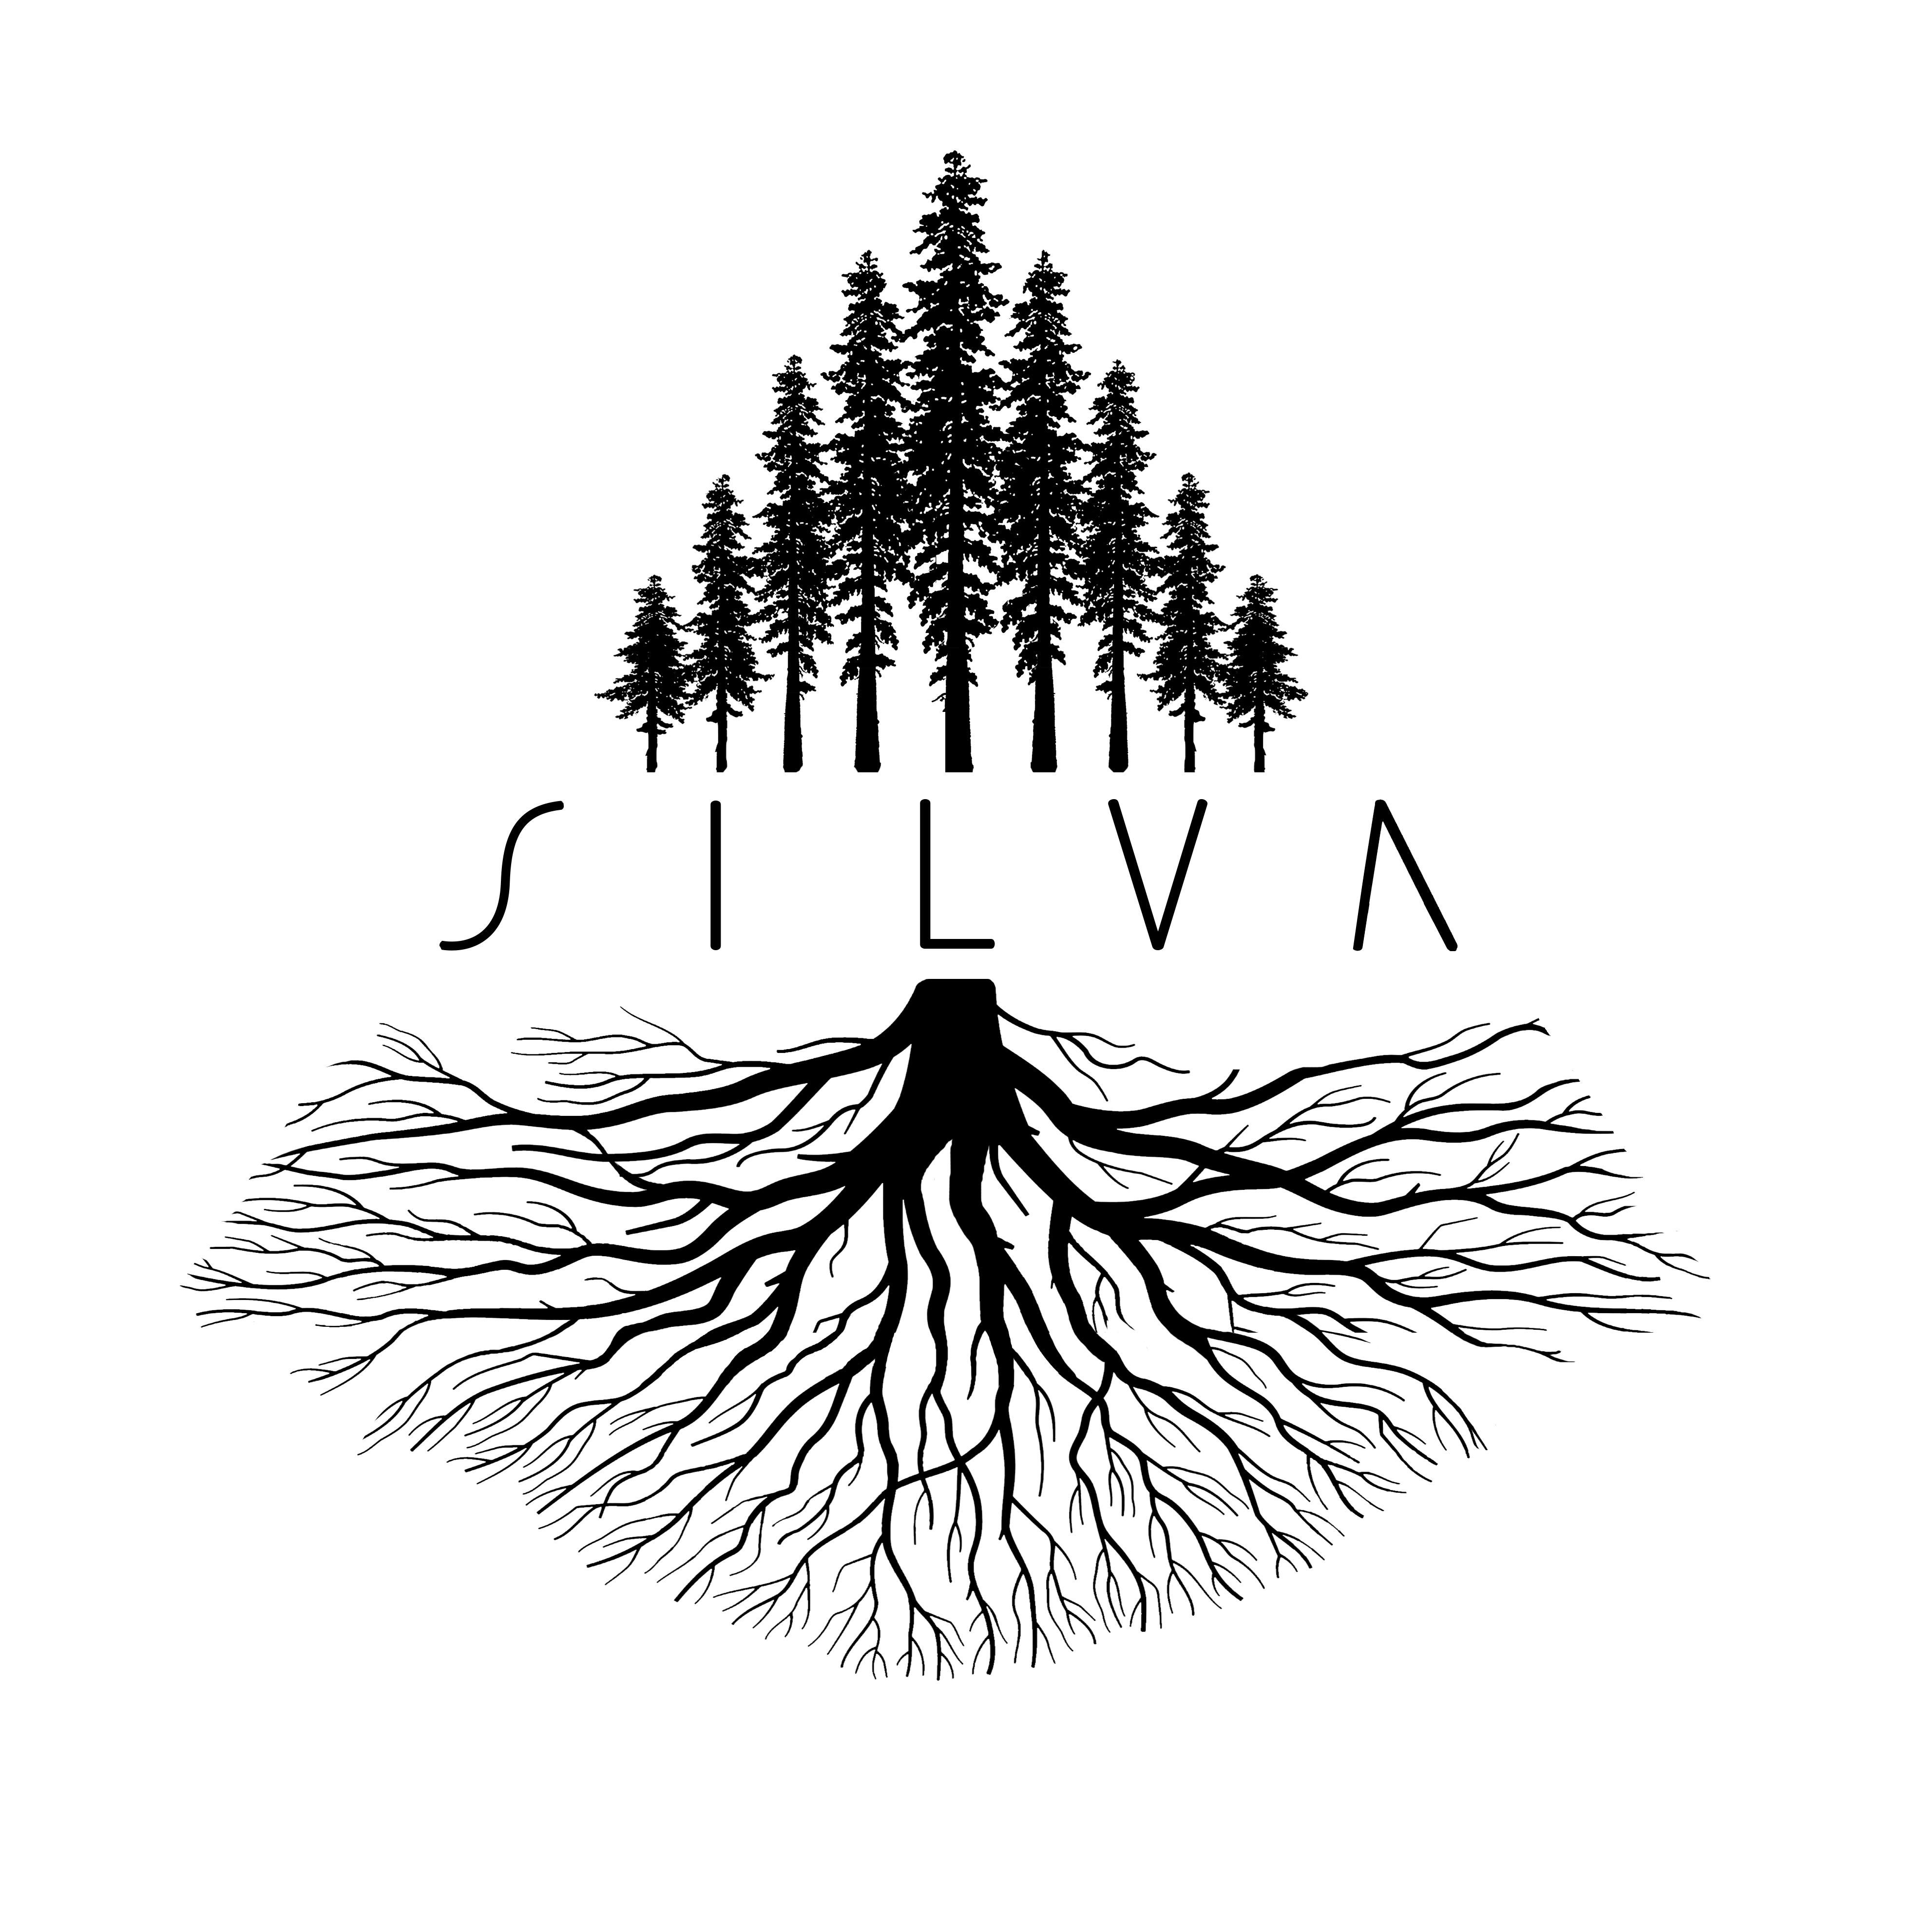 SILVA - The Story of Washington